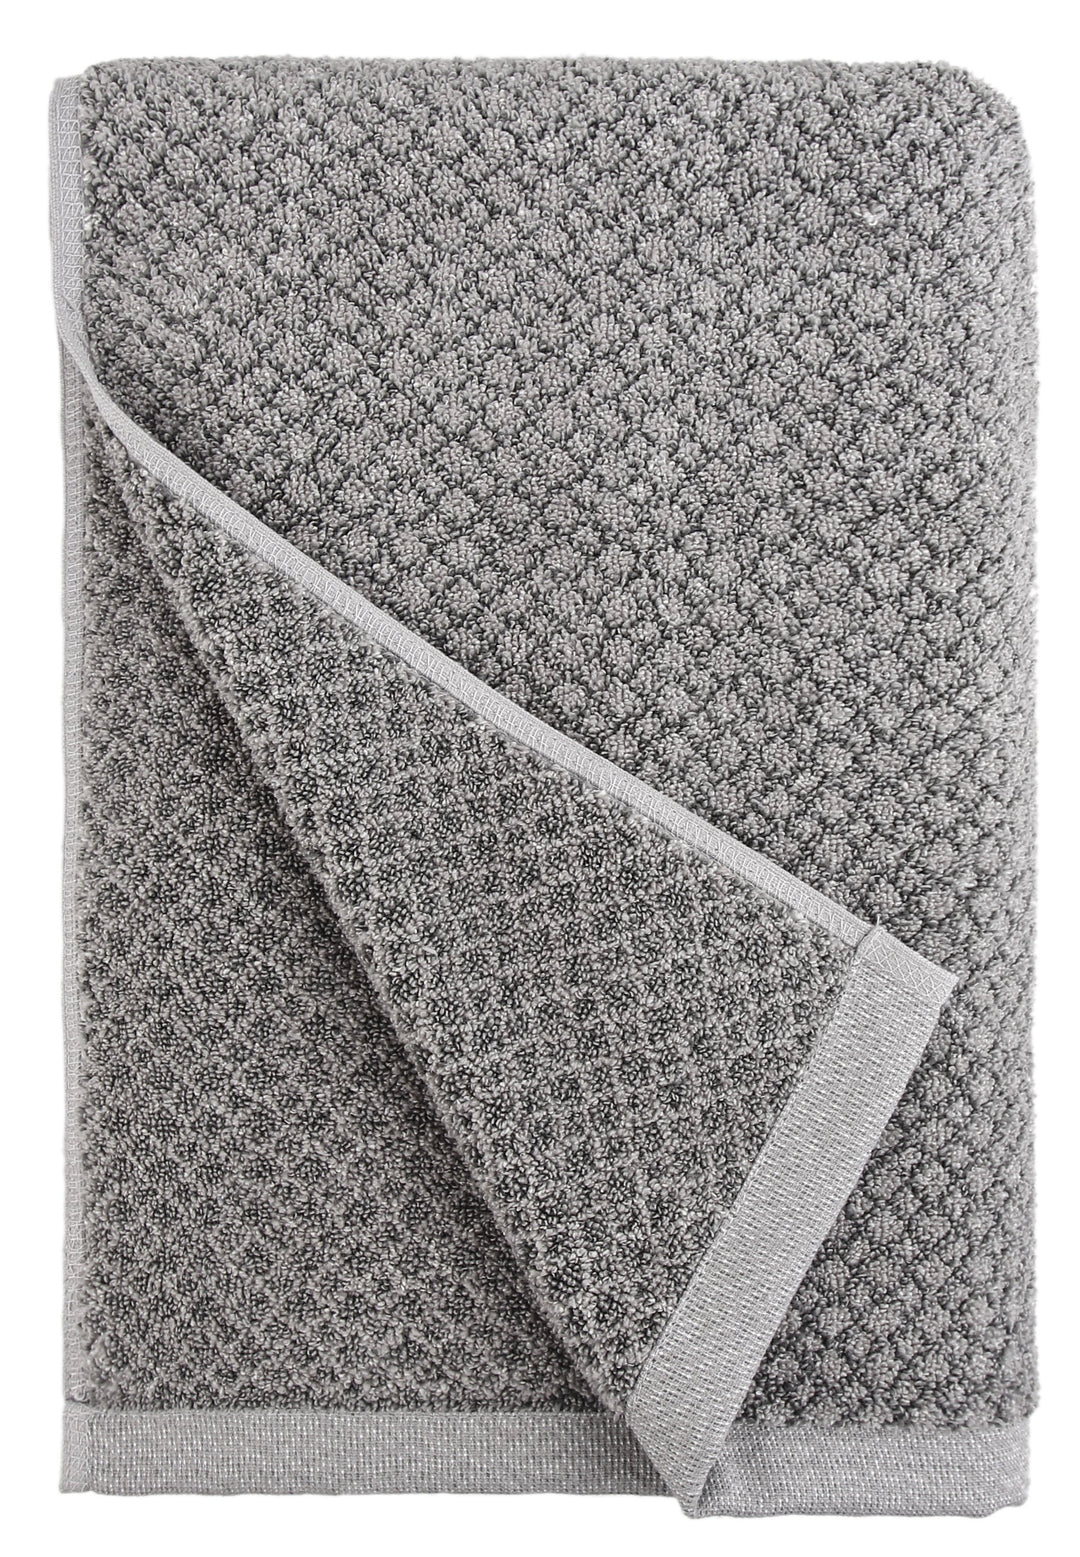 Chip Dye Bath Towel - 1 Piece, Granite